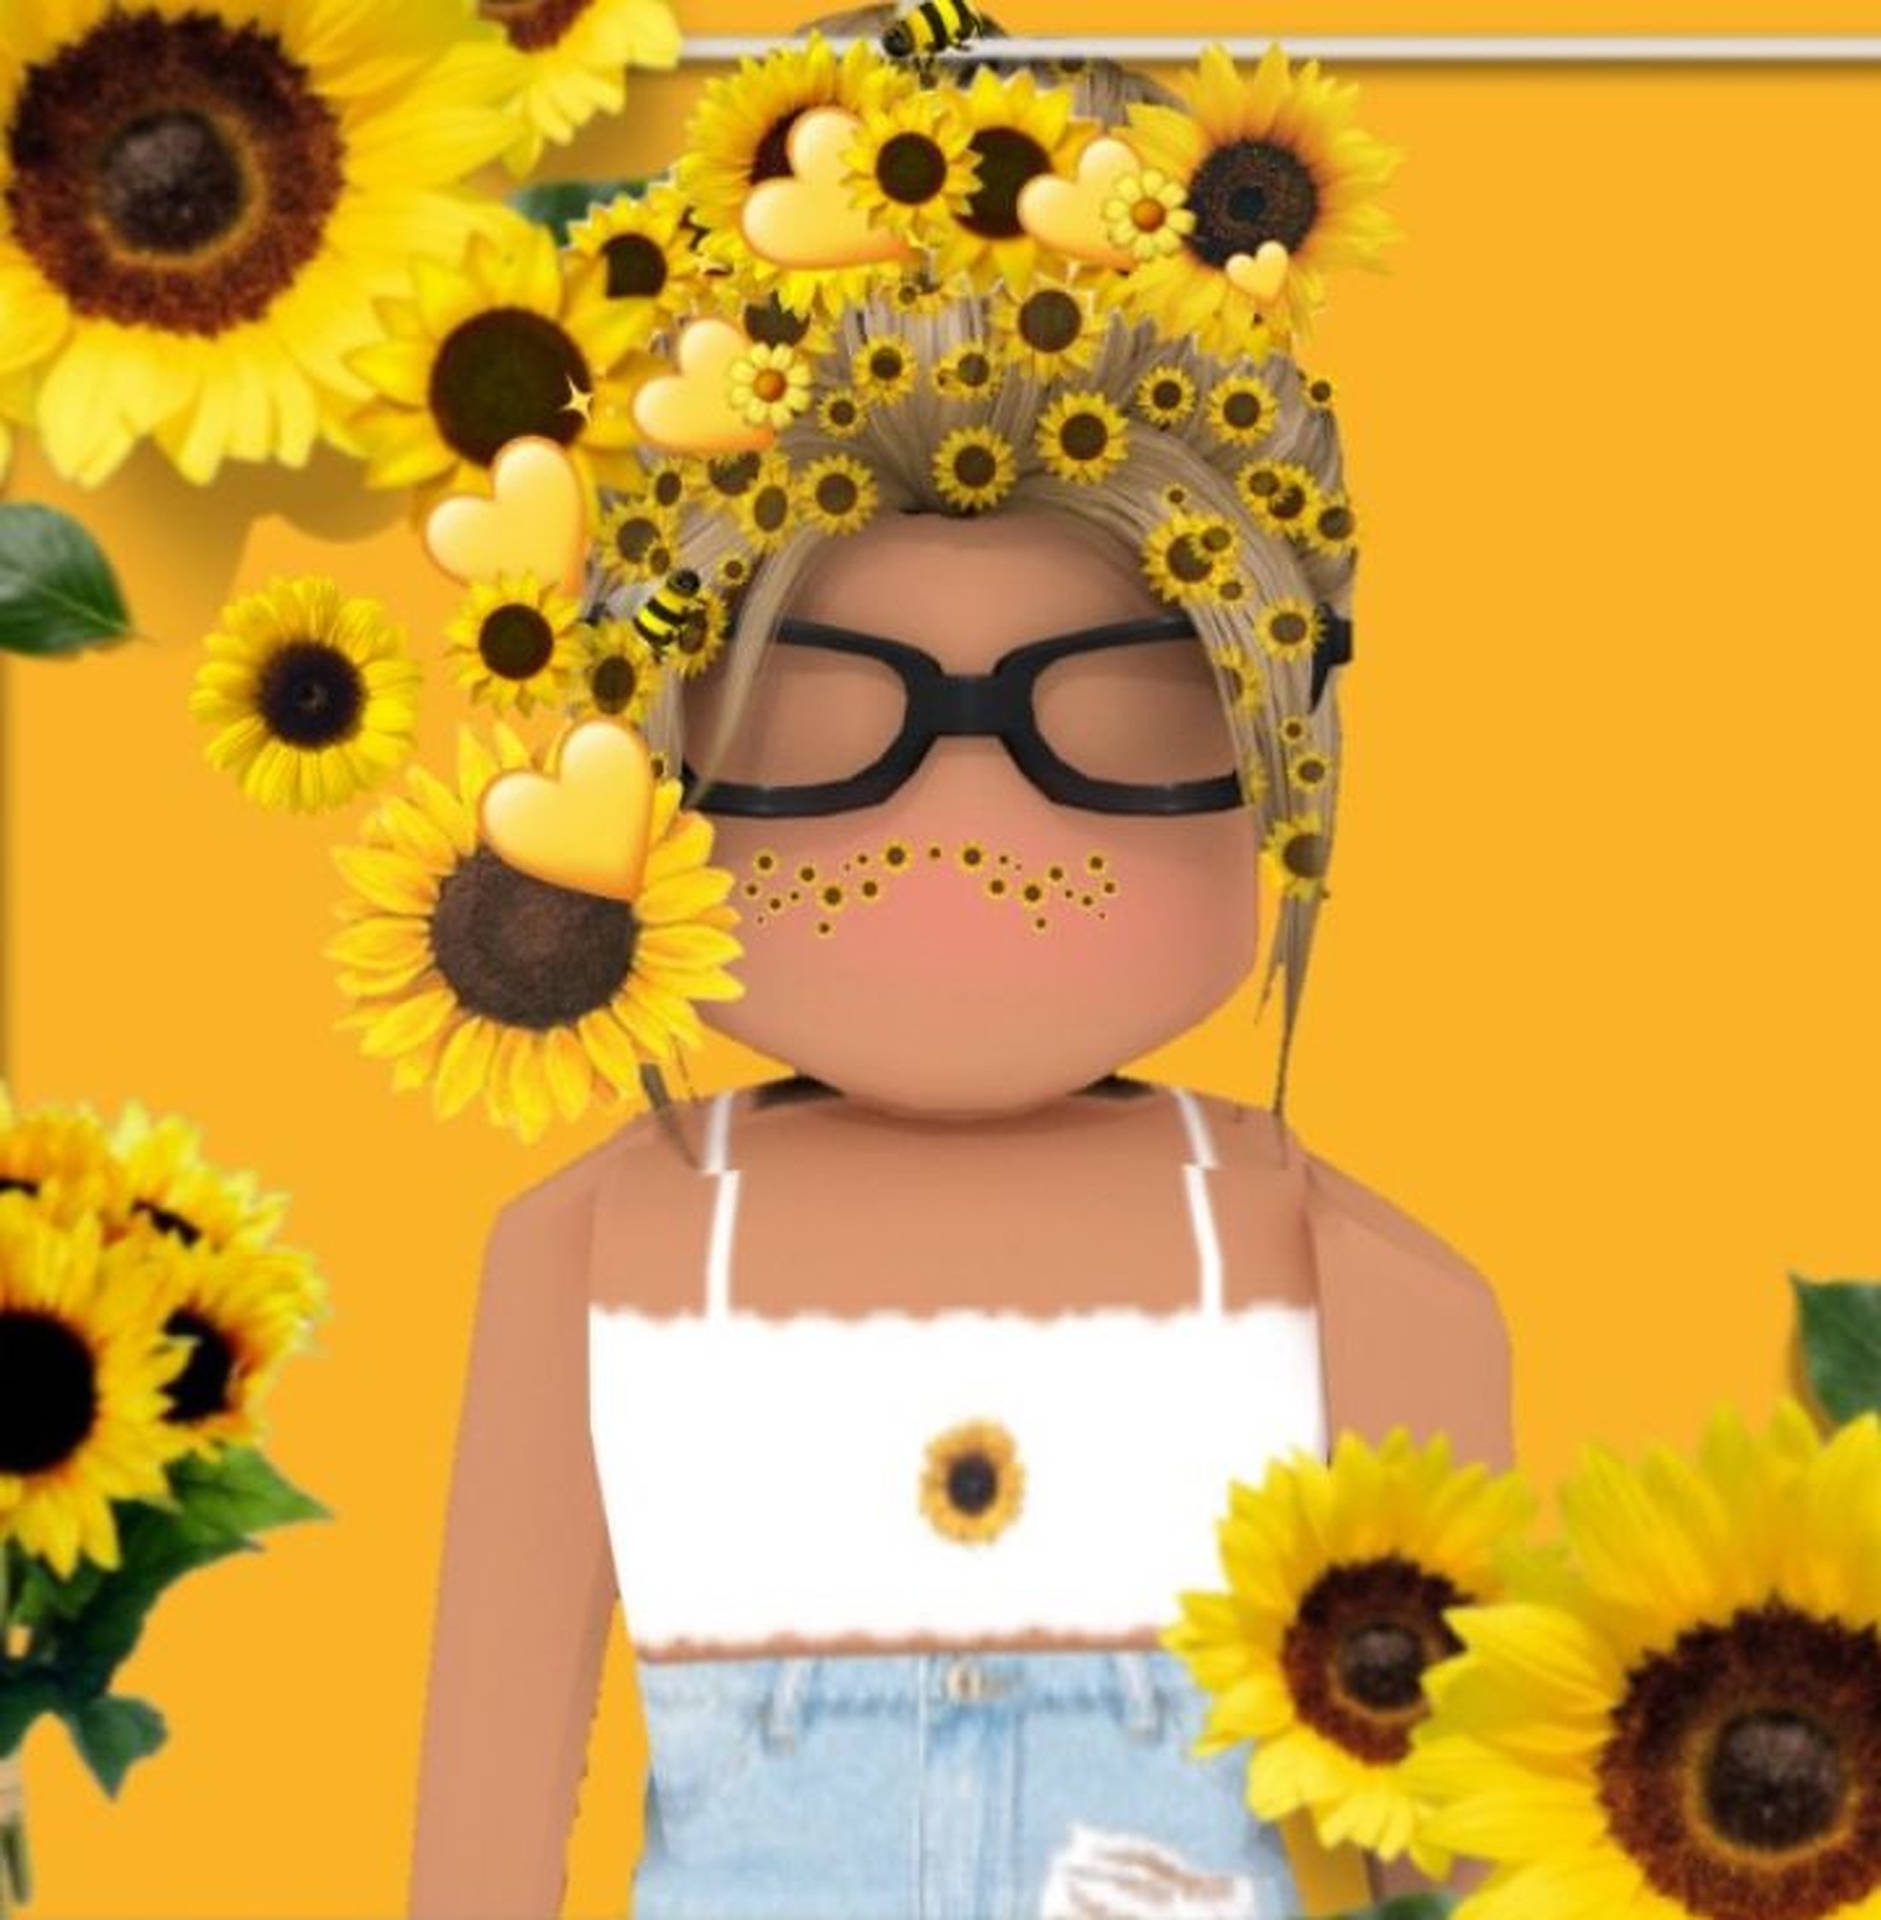 Roblox Girl Wallpaper cute - Wallpaper Sun